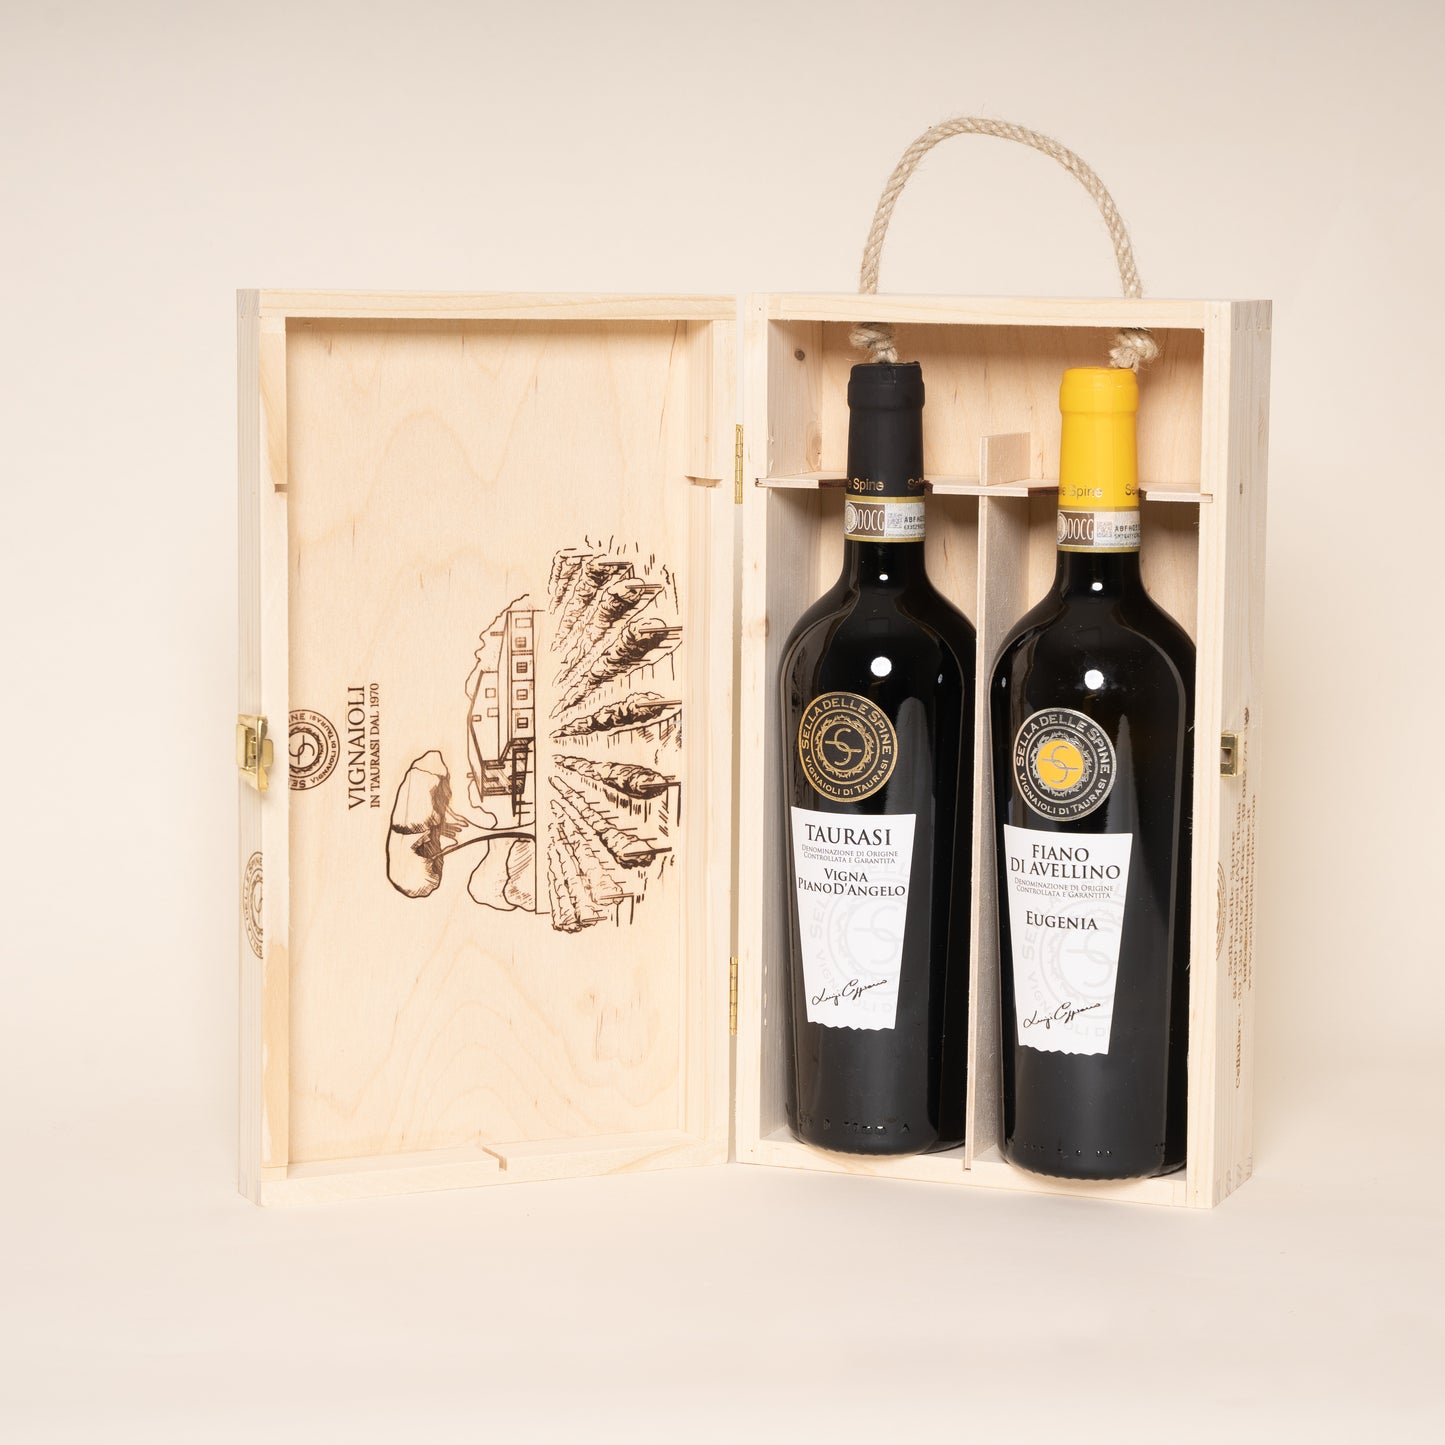 Box of 2 Taurasi wines